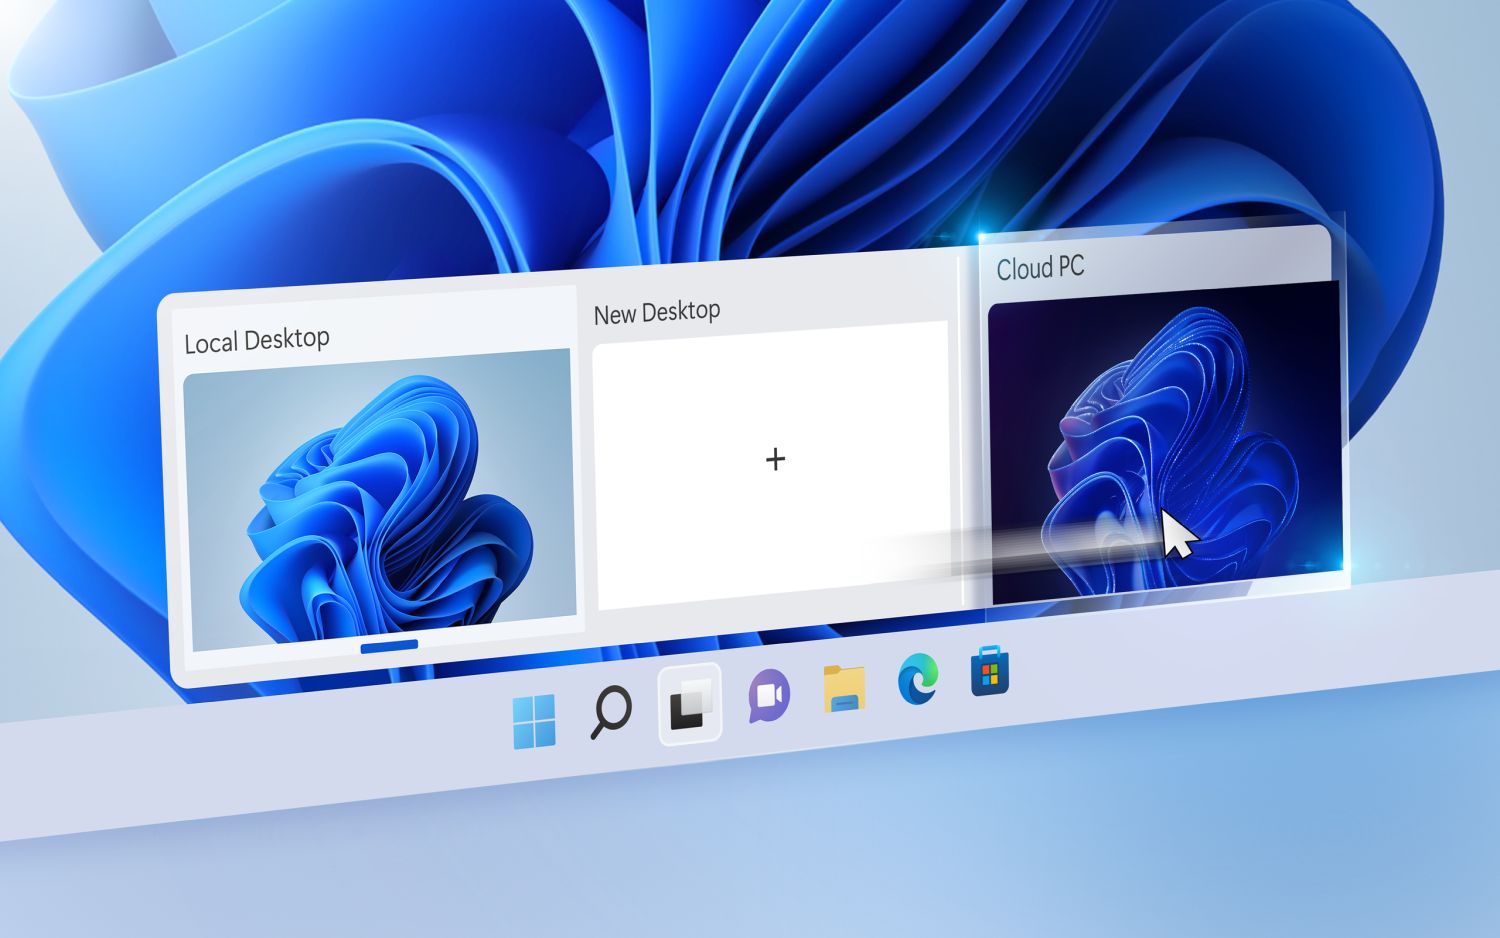 Windows 365 Switch Pressebild. Auf diesem Bild fährt der Mauszeiger über die Task View-Schaltfläche in der Taskleiste. Dadurch öffnet sich die schnelle Auswahl von virtuellen Desktops, worunter auch ein Cloud PC enthalten ist.